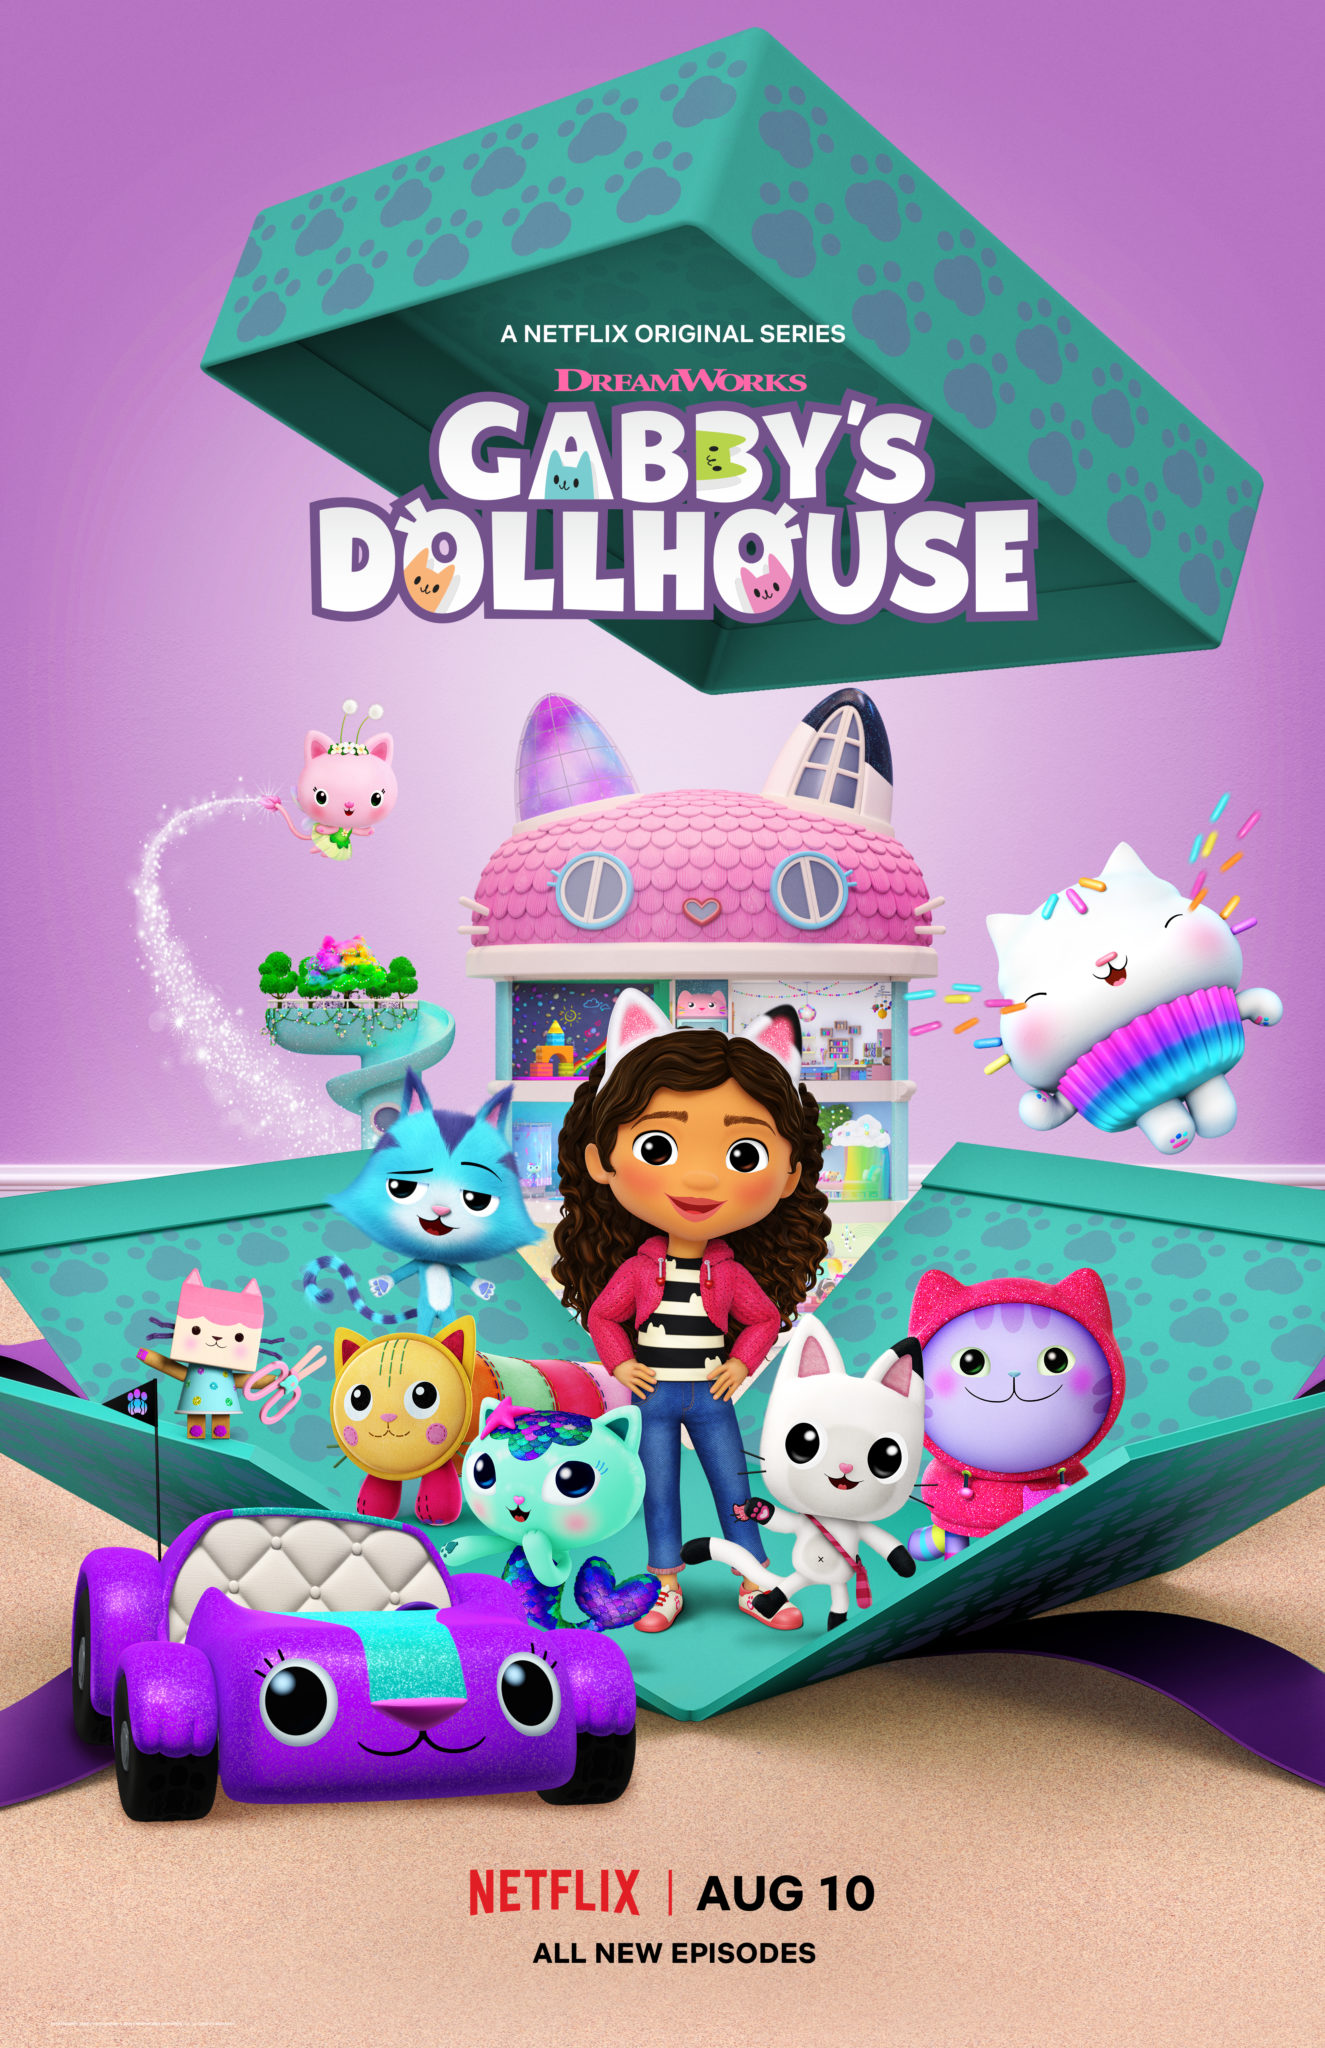 Celebrate Gabbys Dollhouse Return On Netflix With NEW Gabbys Dollhou